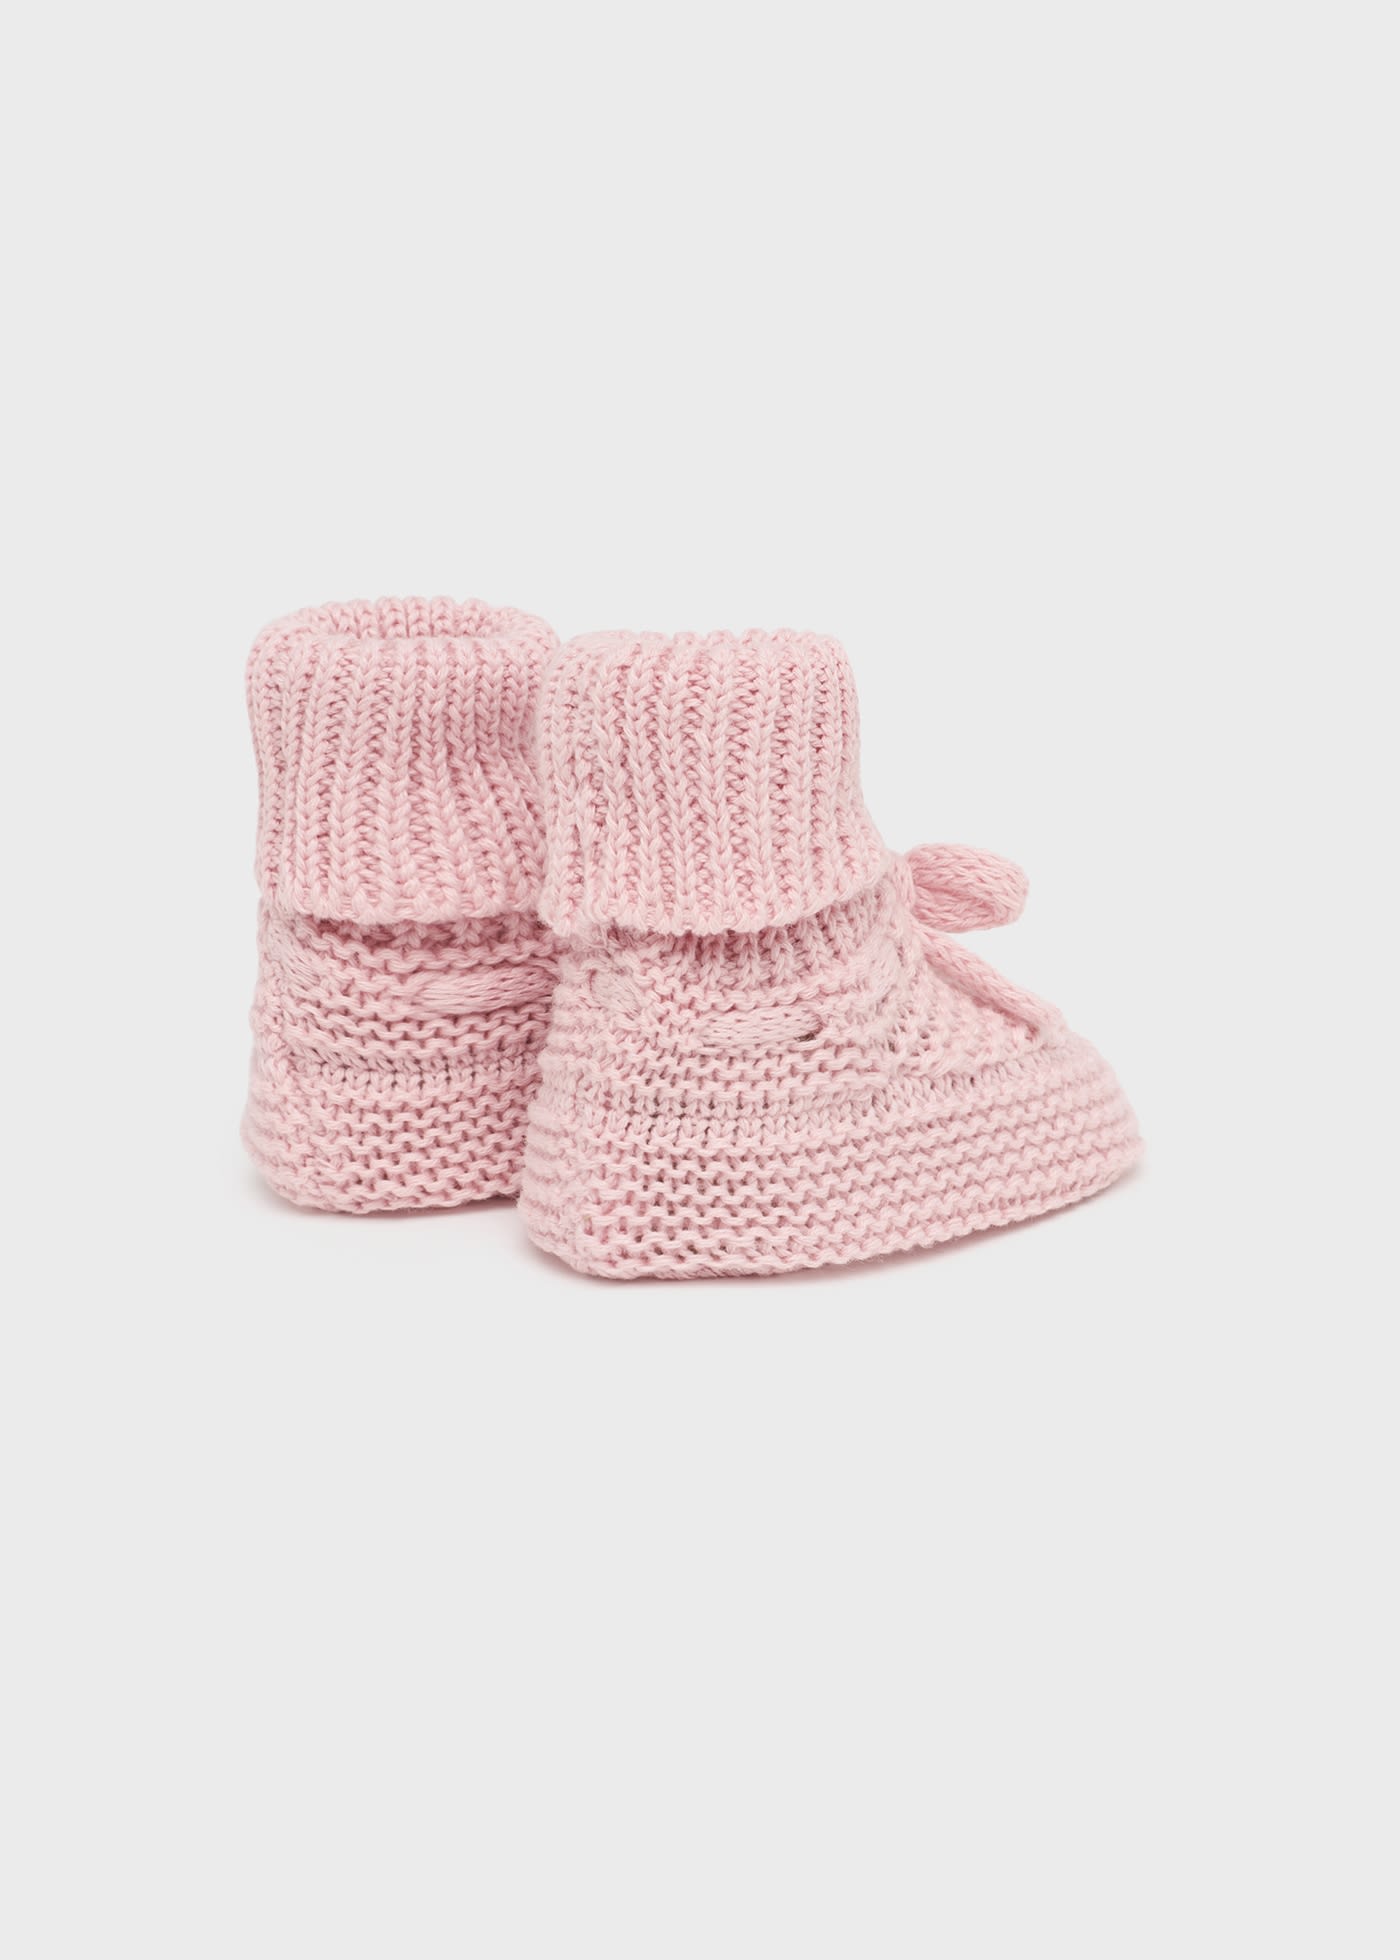 Patuco recién nacido tricot:MAYORAL